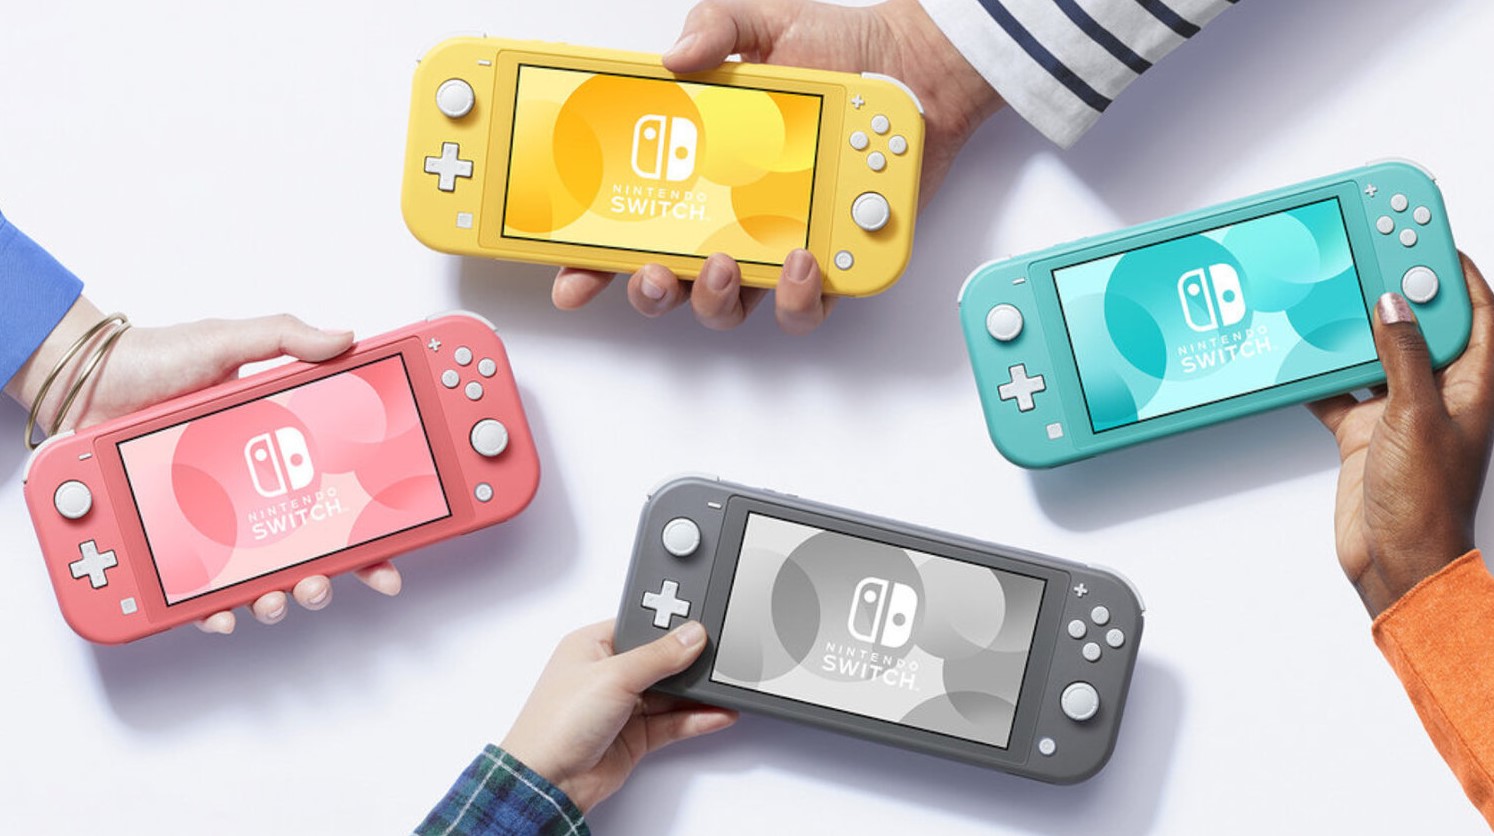 Novo Nintendo Switch Lite tem data de lançamento e preços anunciados -  Notícias - R7 Tecnologia e Ciência